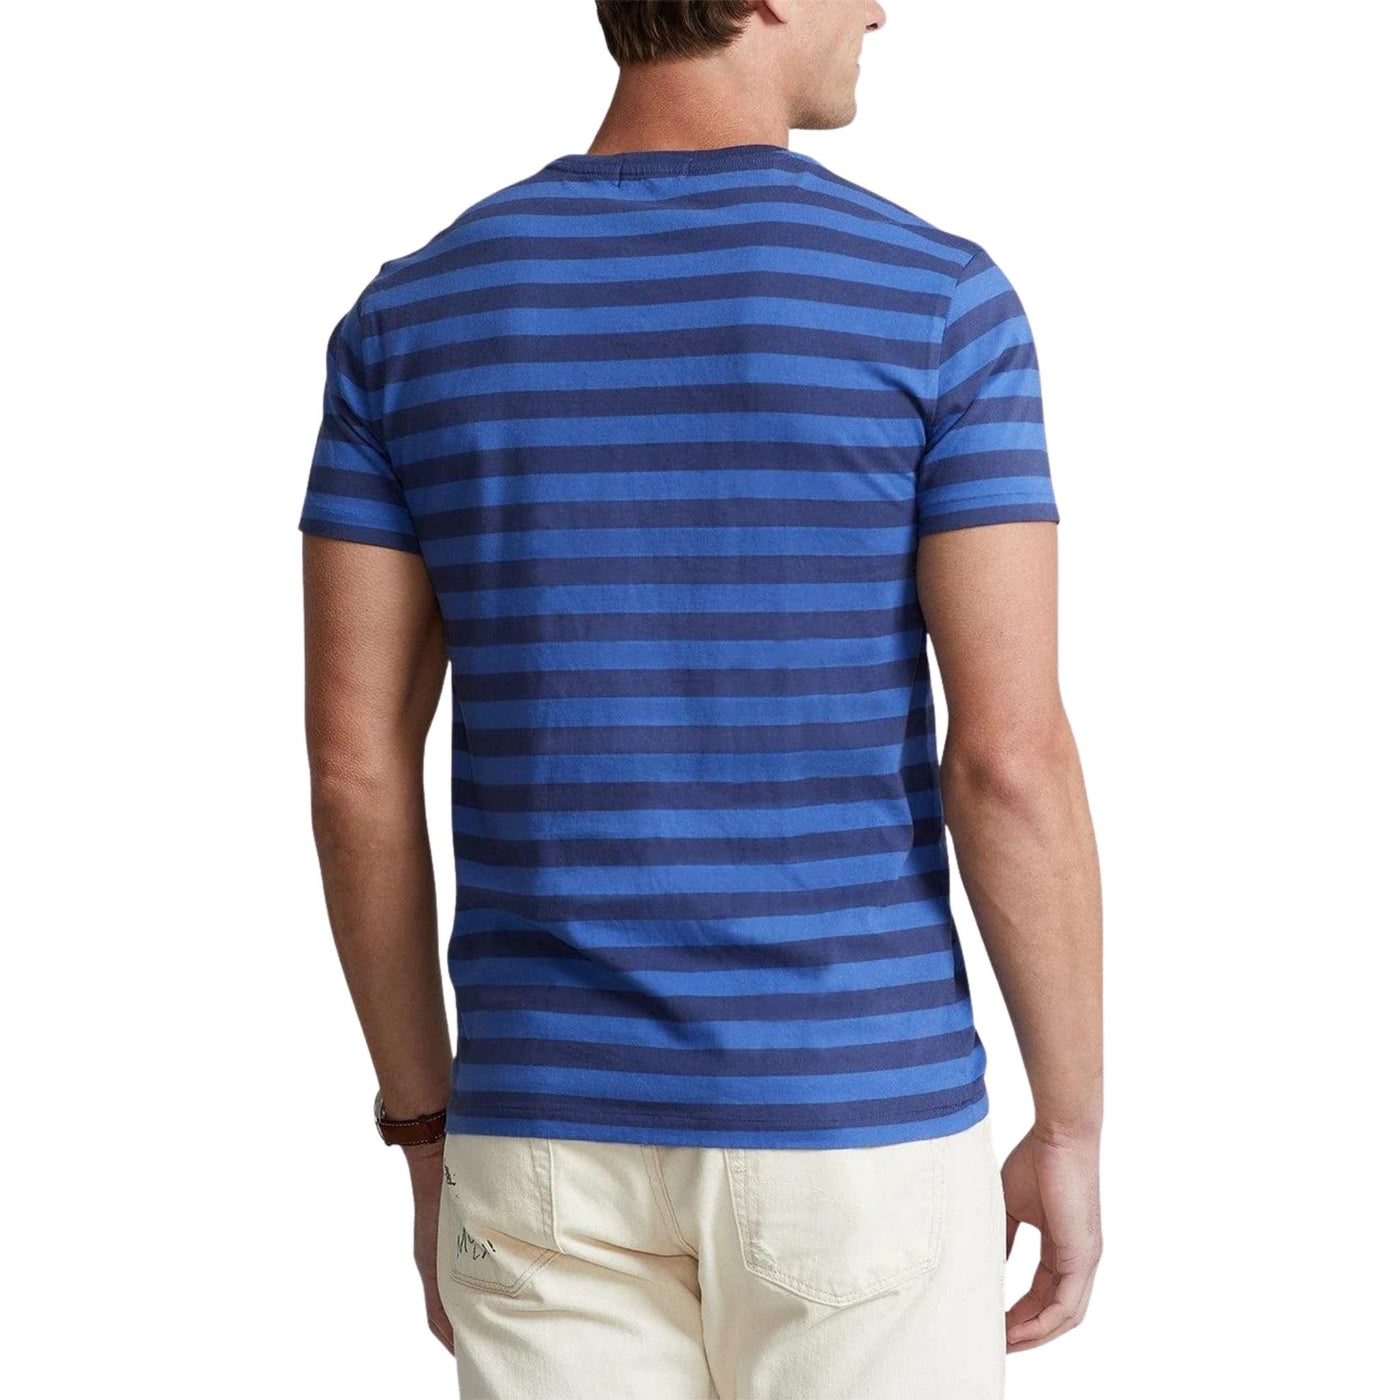 T-shirt uomo blu navy firmata Polo Ralph Lauren su modello vista retro